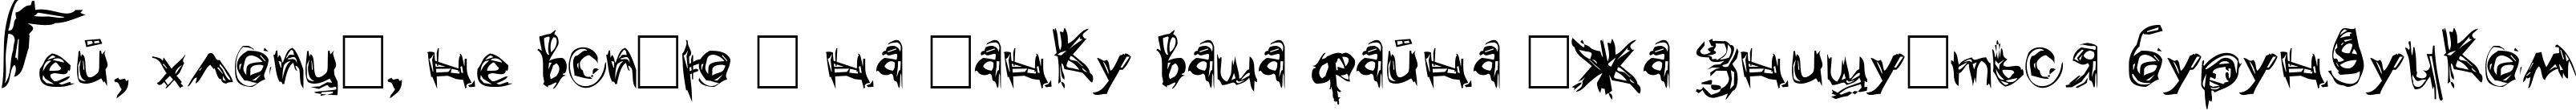 Пример написания шрифтом Grunge текста на украинском